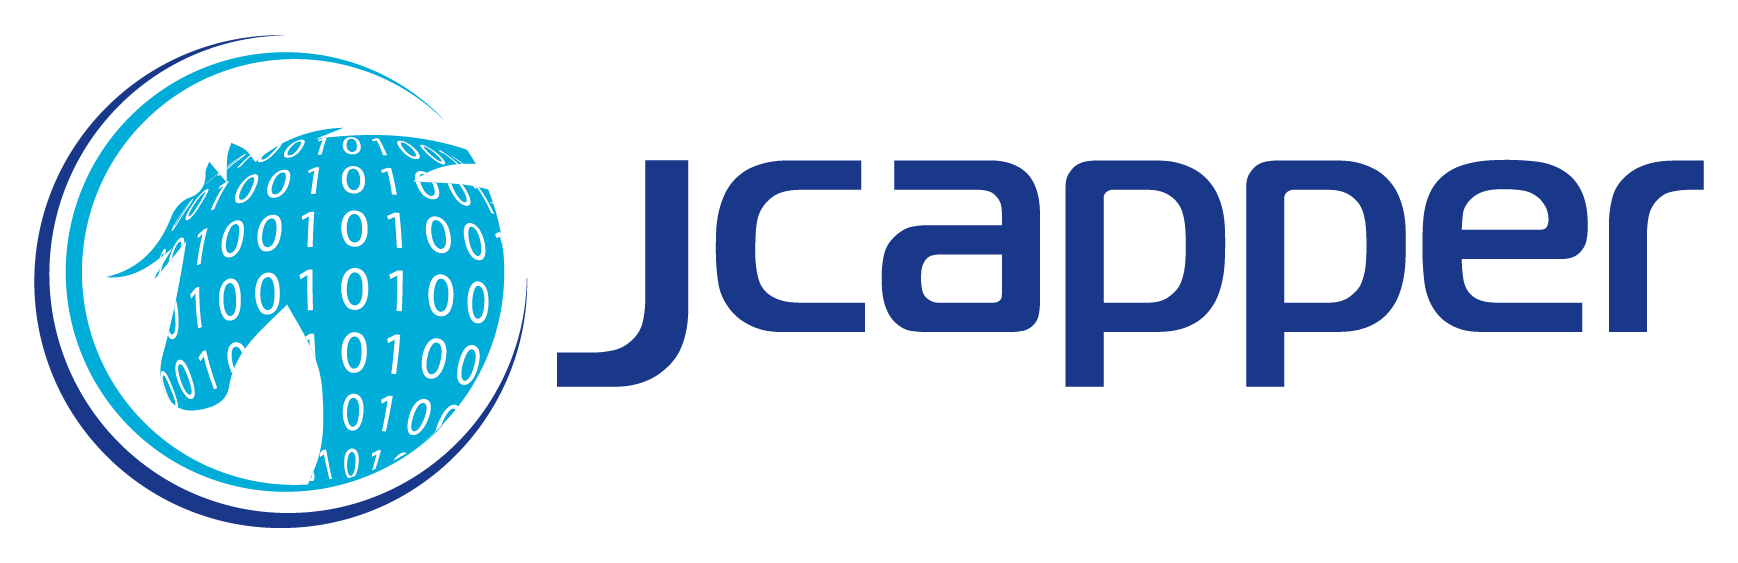 JCapper Silver Product Description